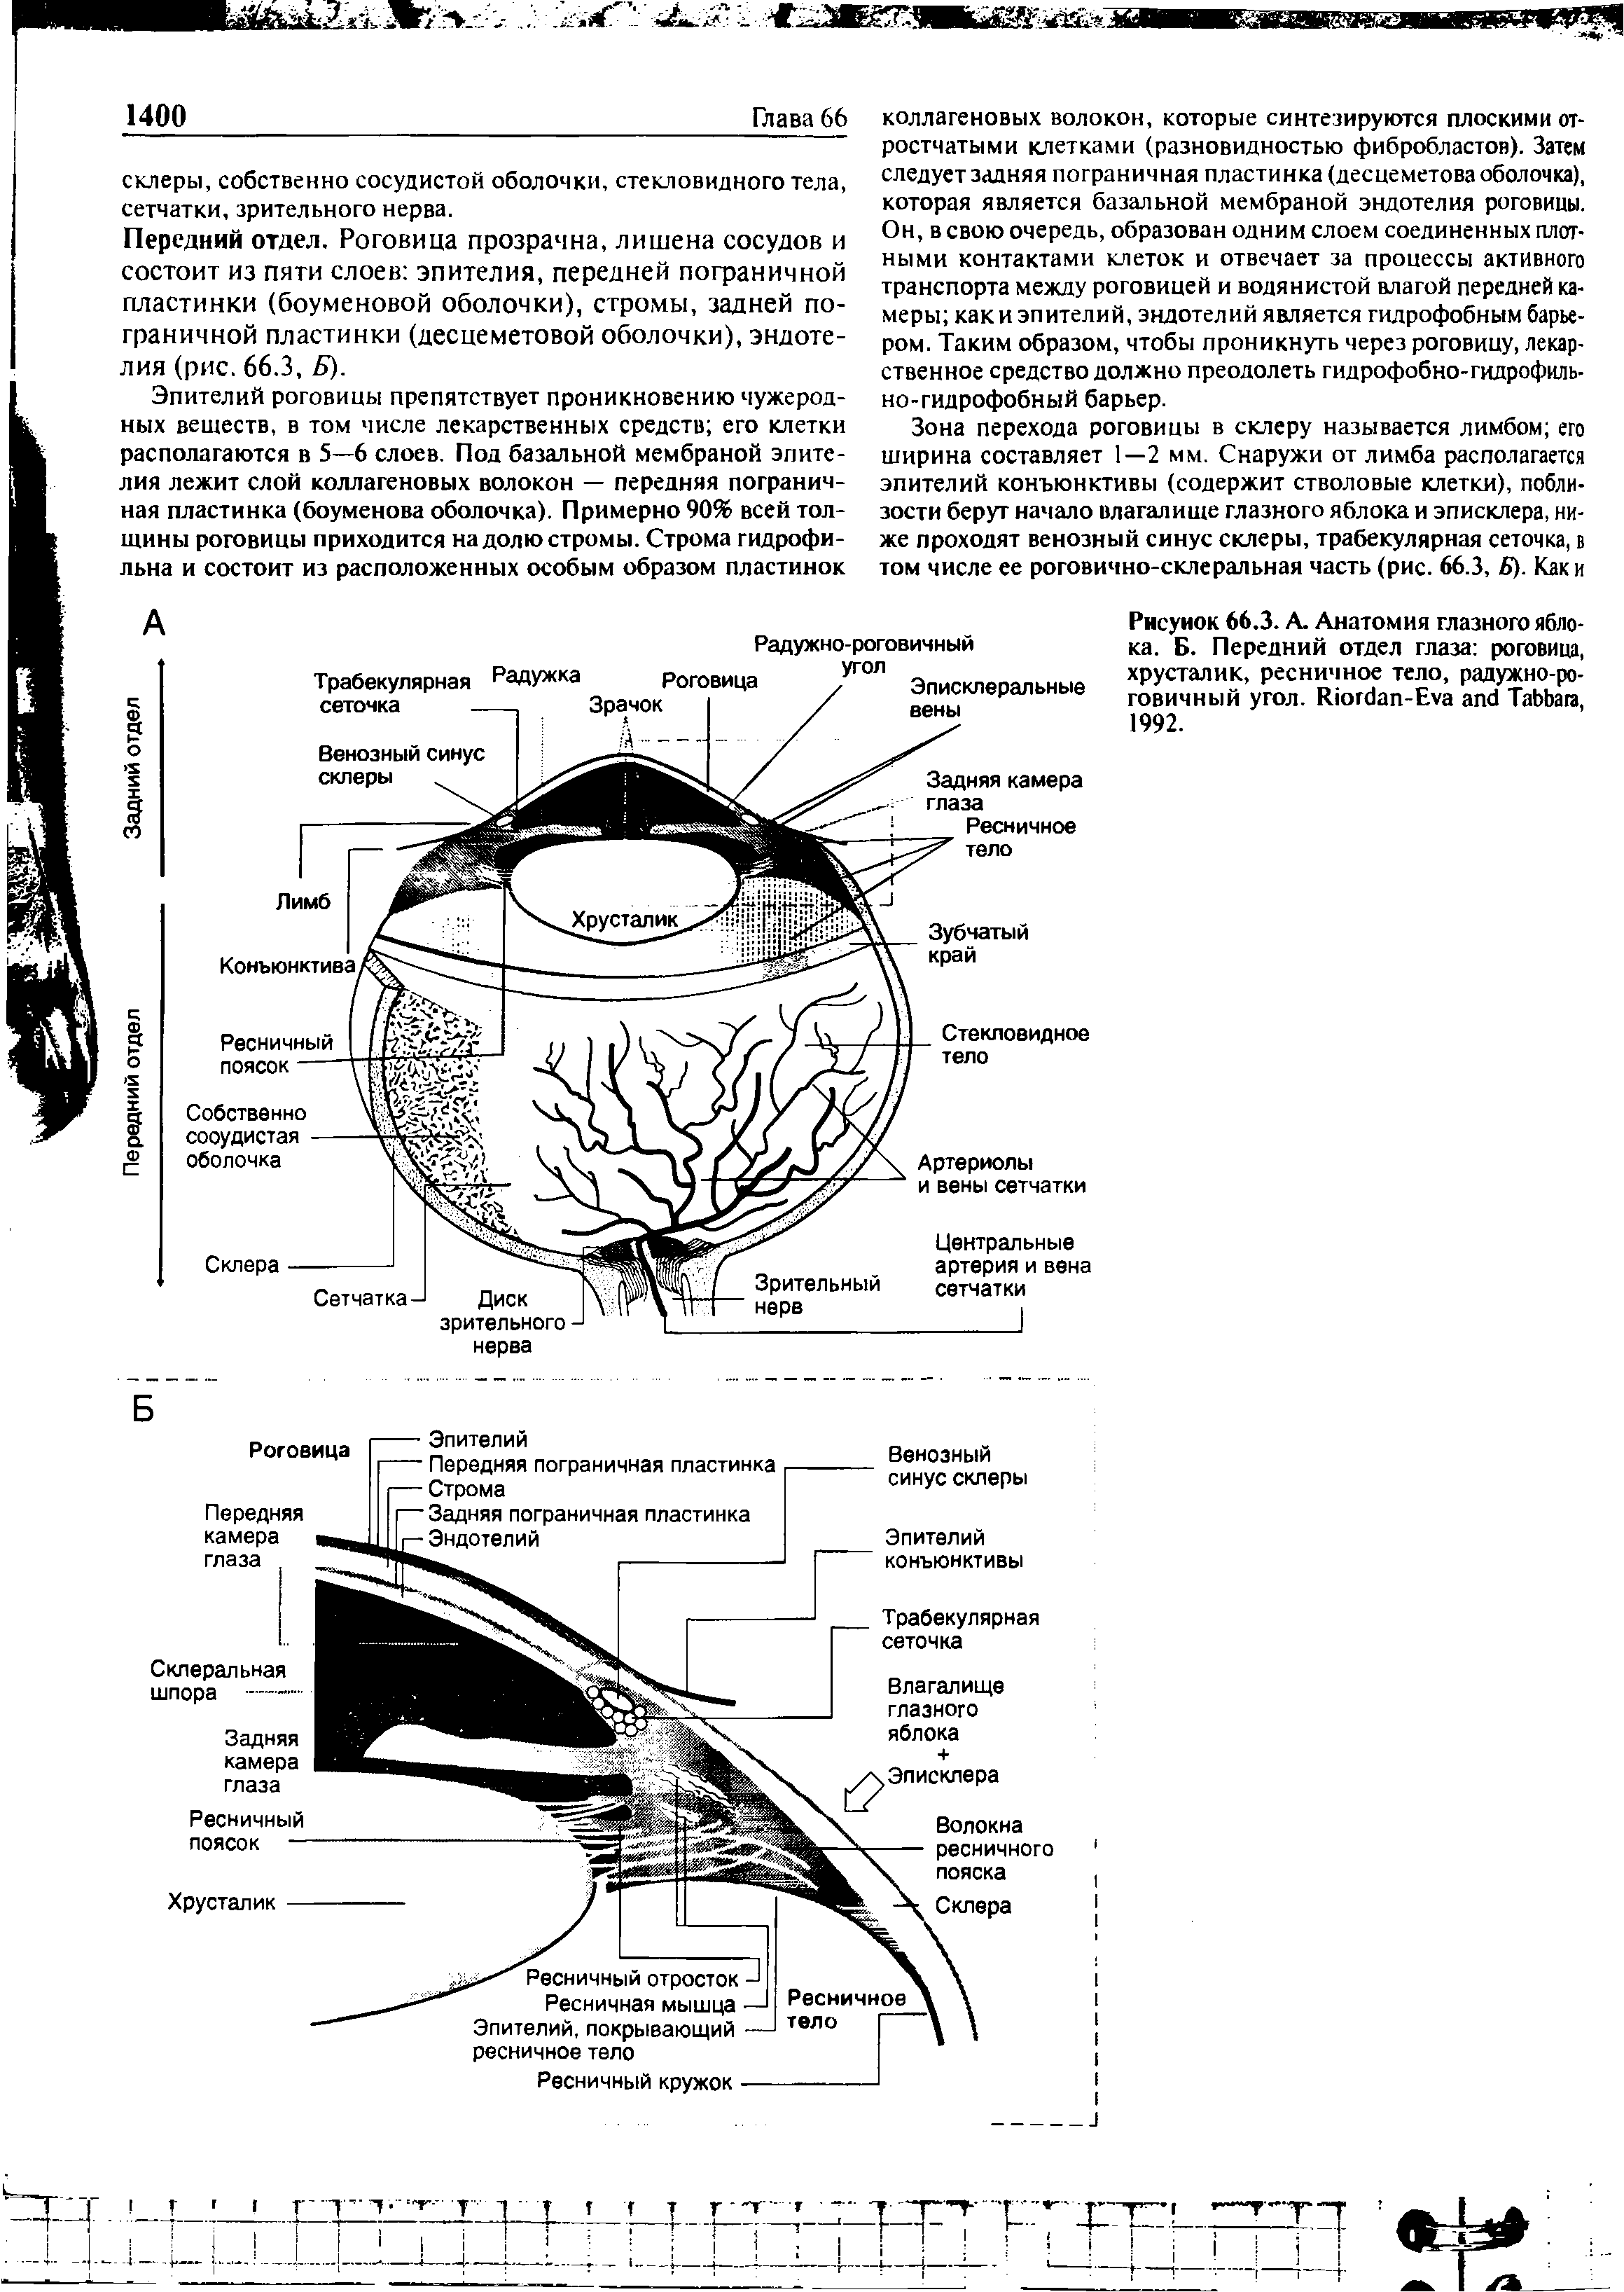 Рисунок 66.3. А. Анатомия глазного яблока. Б. Передний отдел глаза роговица, хрусталик, ресничное тело, радужно-роговичный угол. R -E T , 1992.